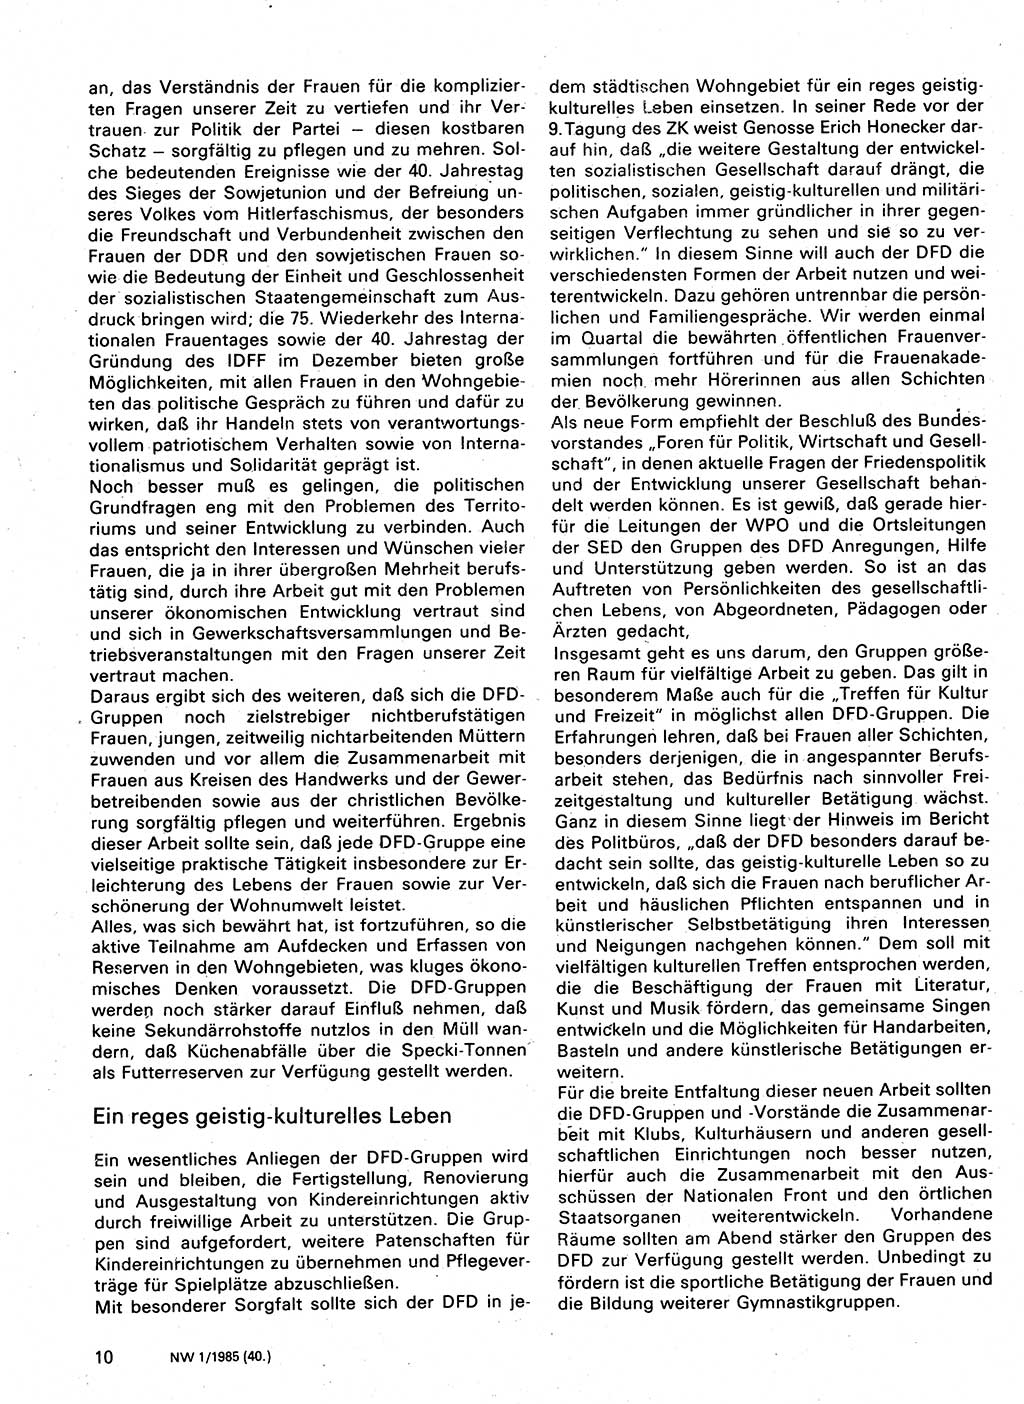 Neuer Weg (NW), Organ des Zentralkomitees (ZK) der SED (Sozialistische Einheitspartei Deutschlands) für Fragen des Parteilebens, 40. Jahrgang [Deutsche Demokratische Republik (DDR)] 1985, Seite 10 (NW ZK SED DDR 1985, S. 10)